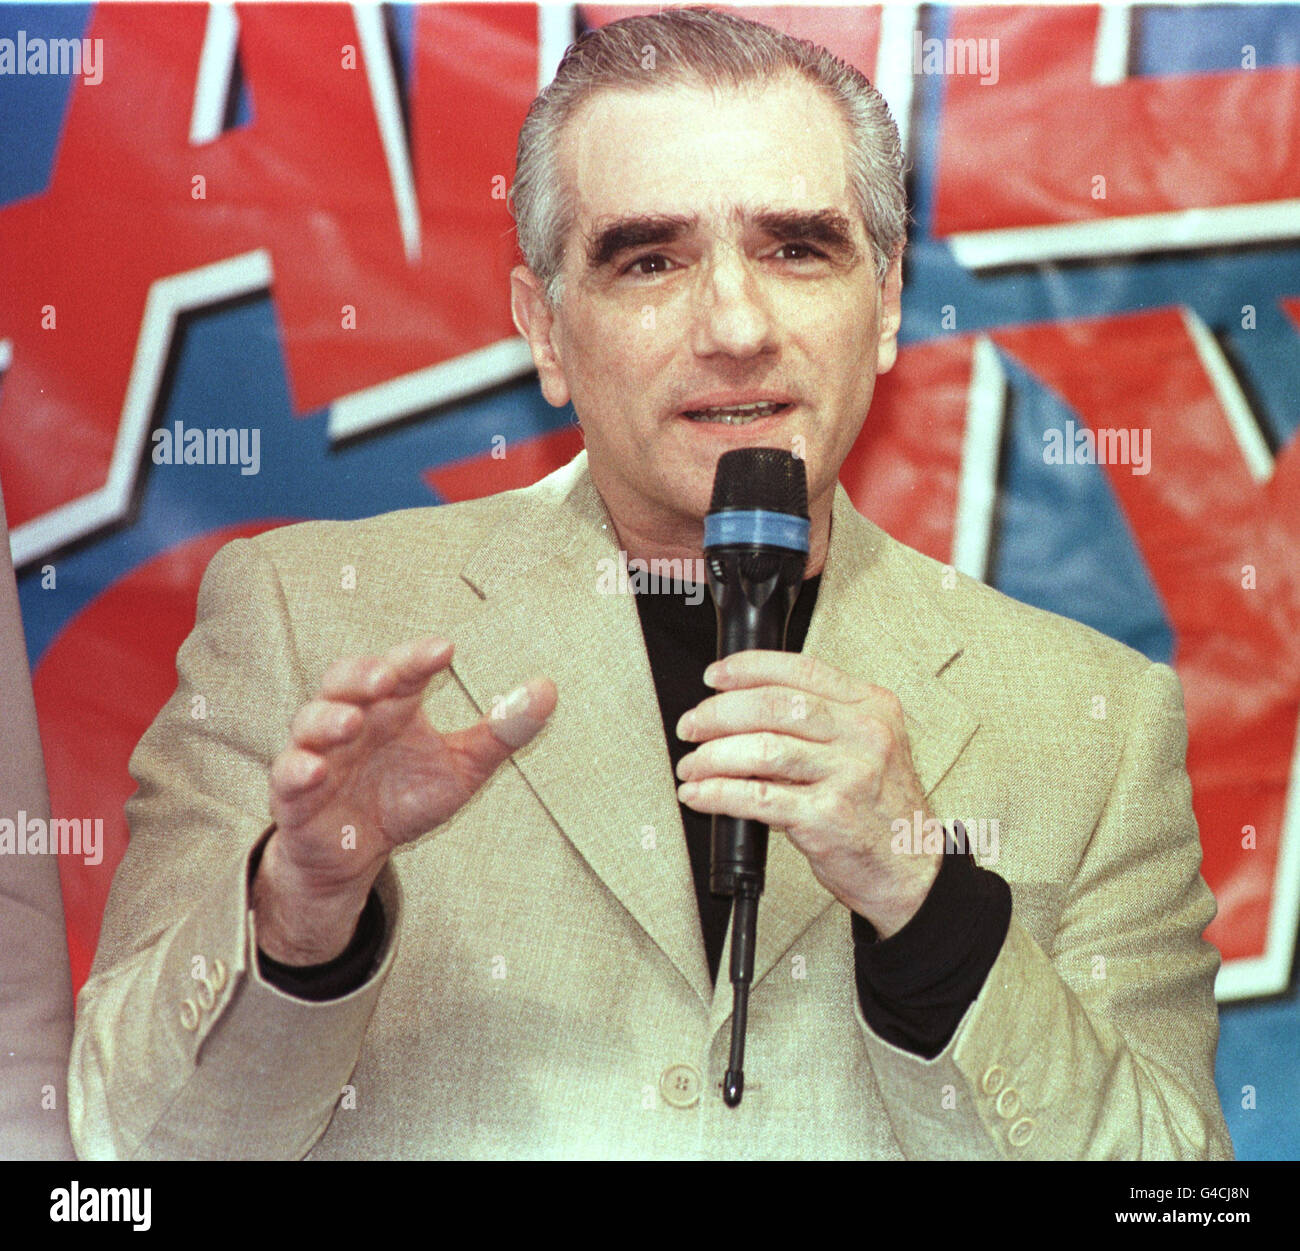 Regisseur Martin Scorsese bei einer Pressekonferenz im Planet Hollywood in Cannes, Frankreich, wo er eine besondere Partnerschaft zwischen Planet Holywood und amerikanischen Filmklassikern ankündigte, um alte und geschätzte internationale Filmklassiker wiederherzustellen. Stockfoto